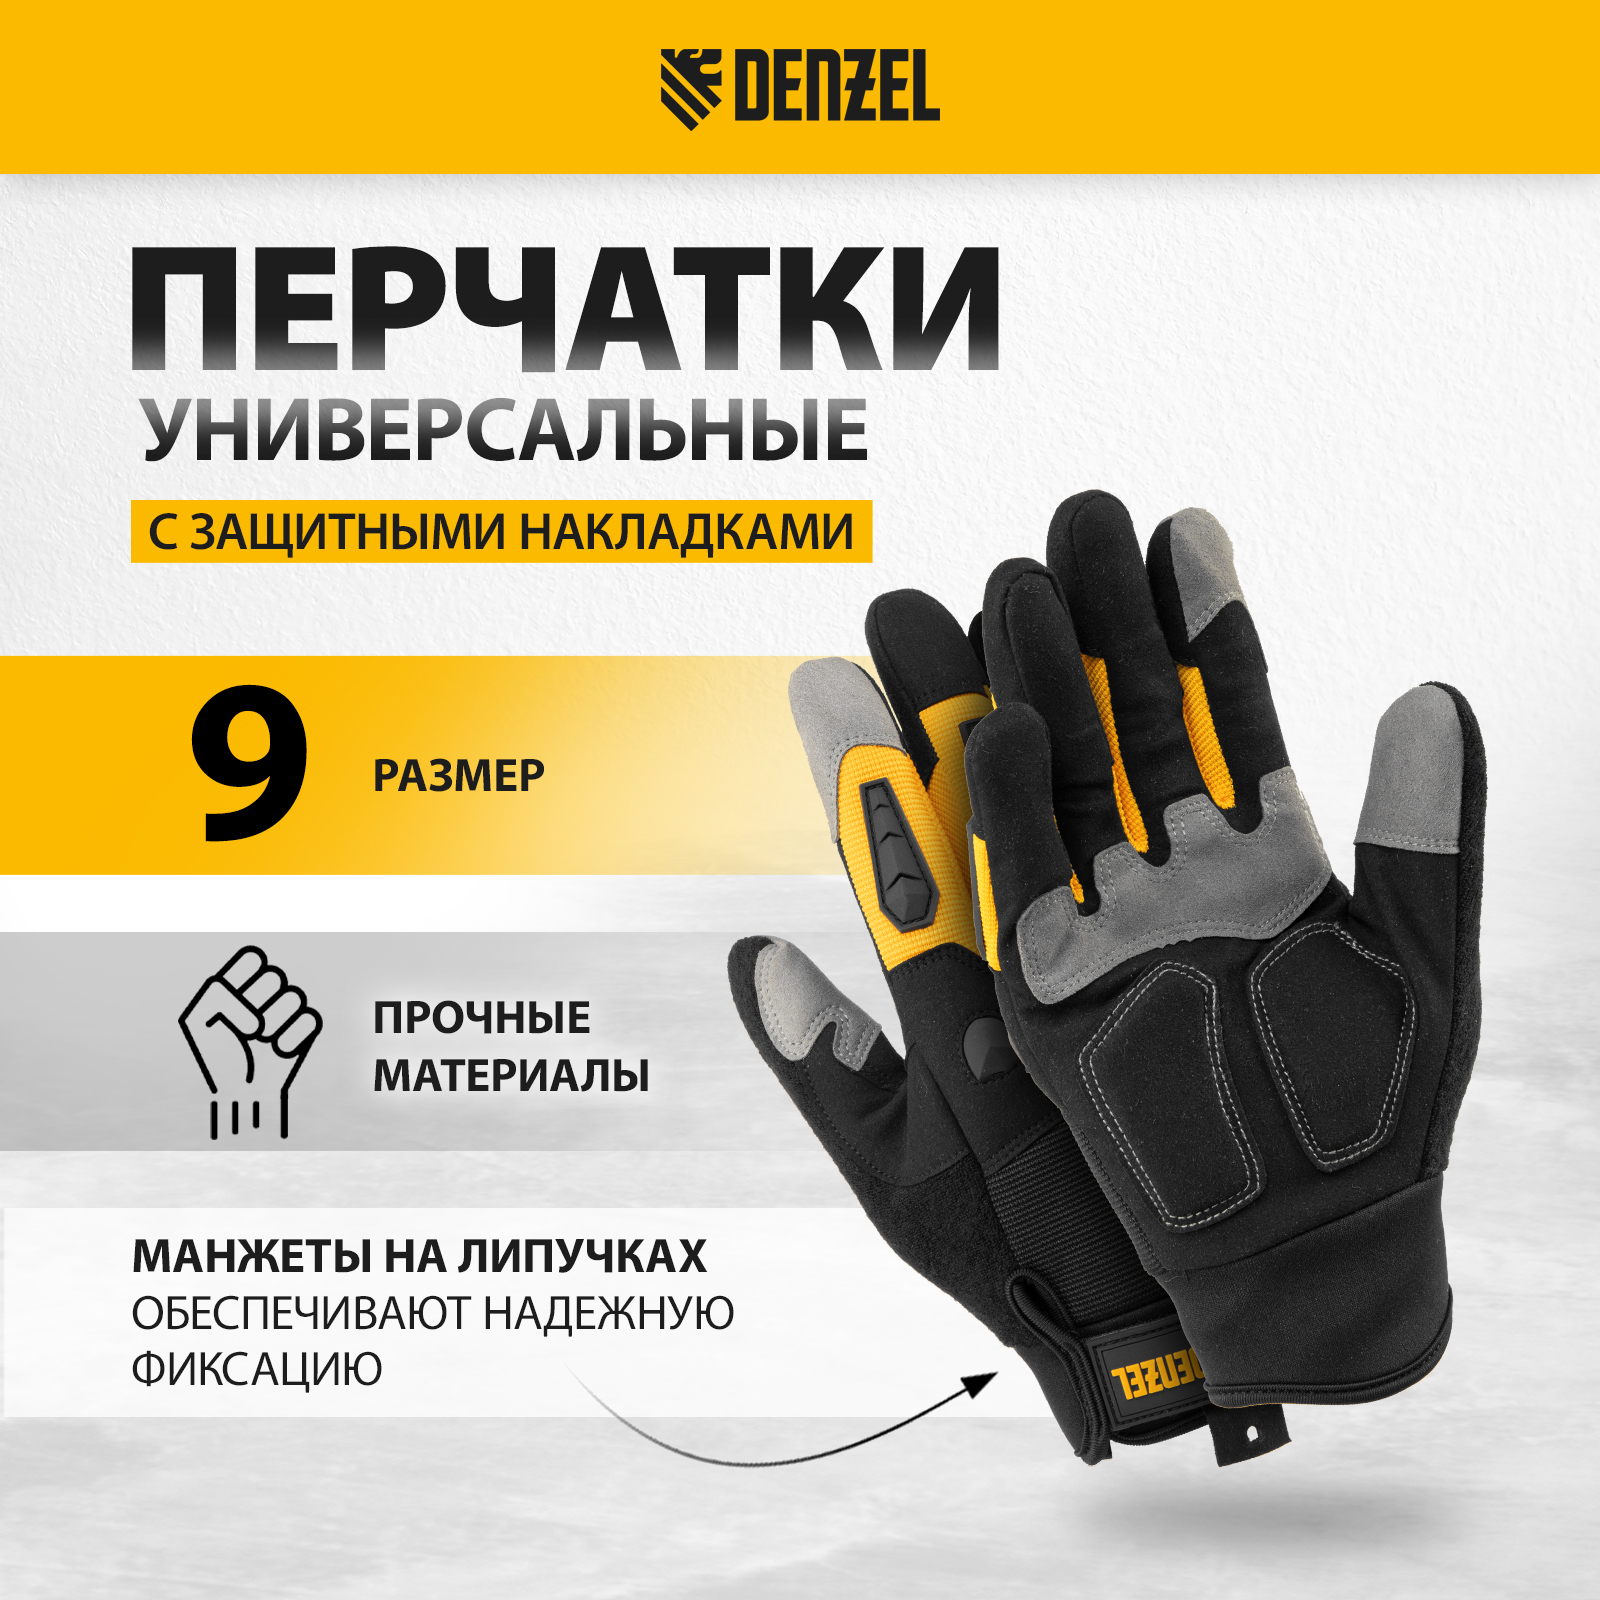 Перчатки универсальные DENZEL размер 9 68002 универсальные перчатки truper